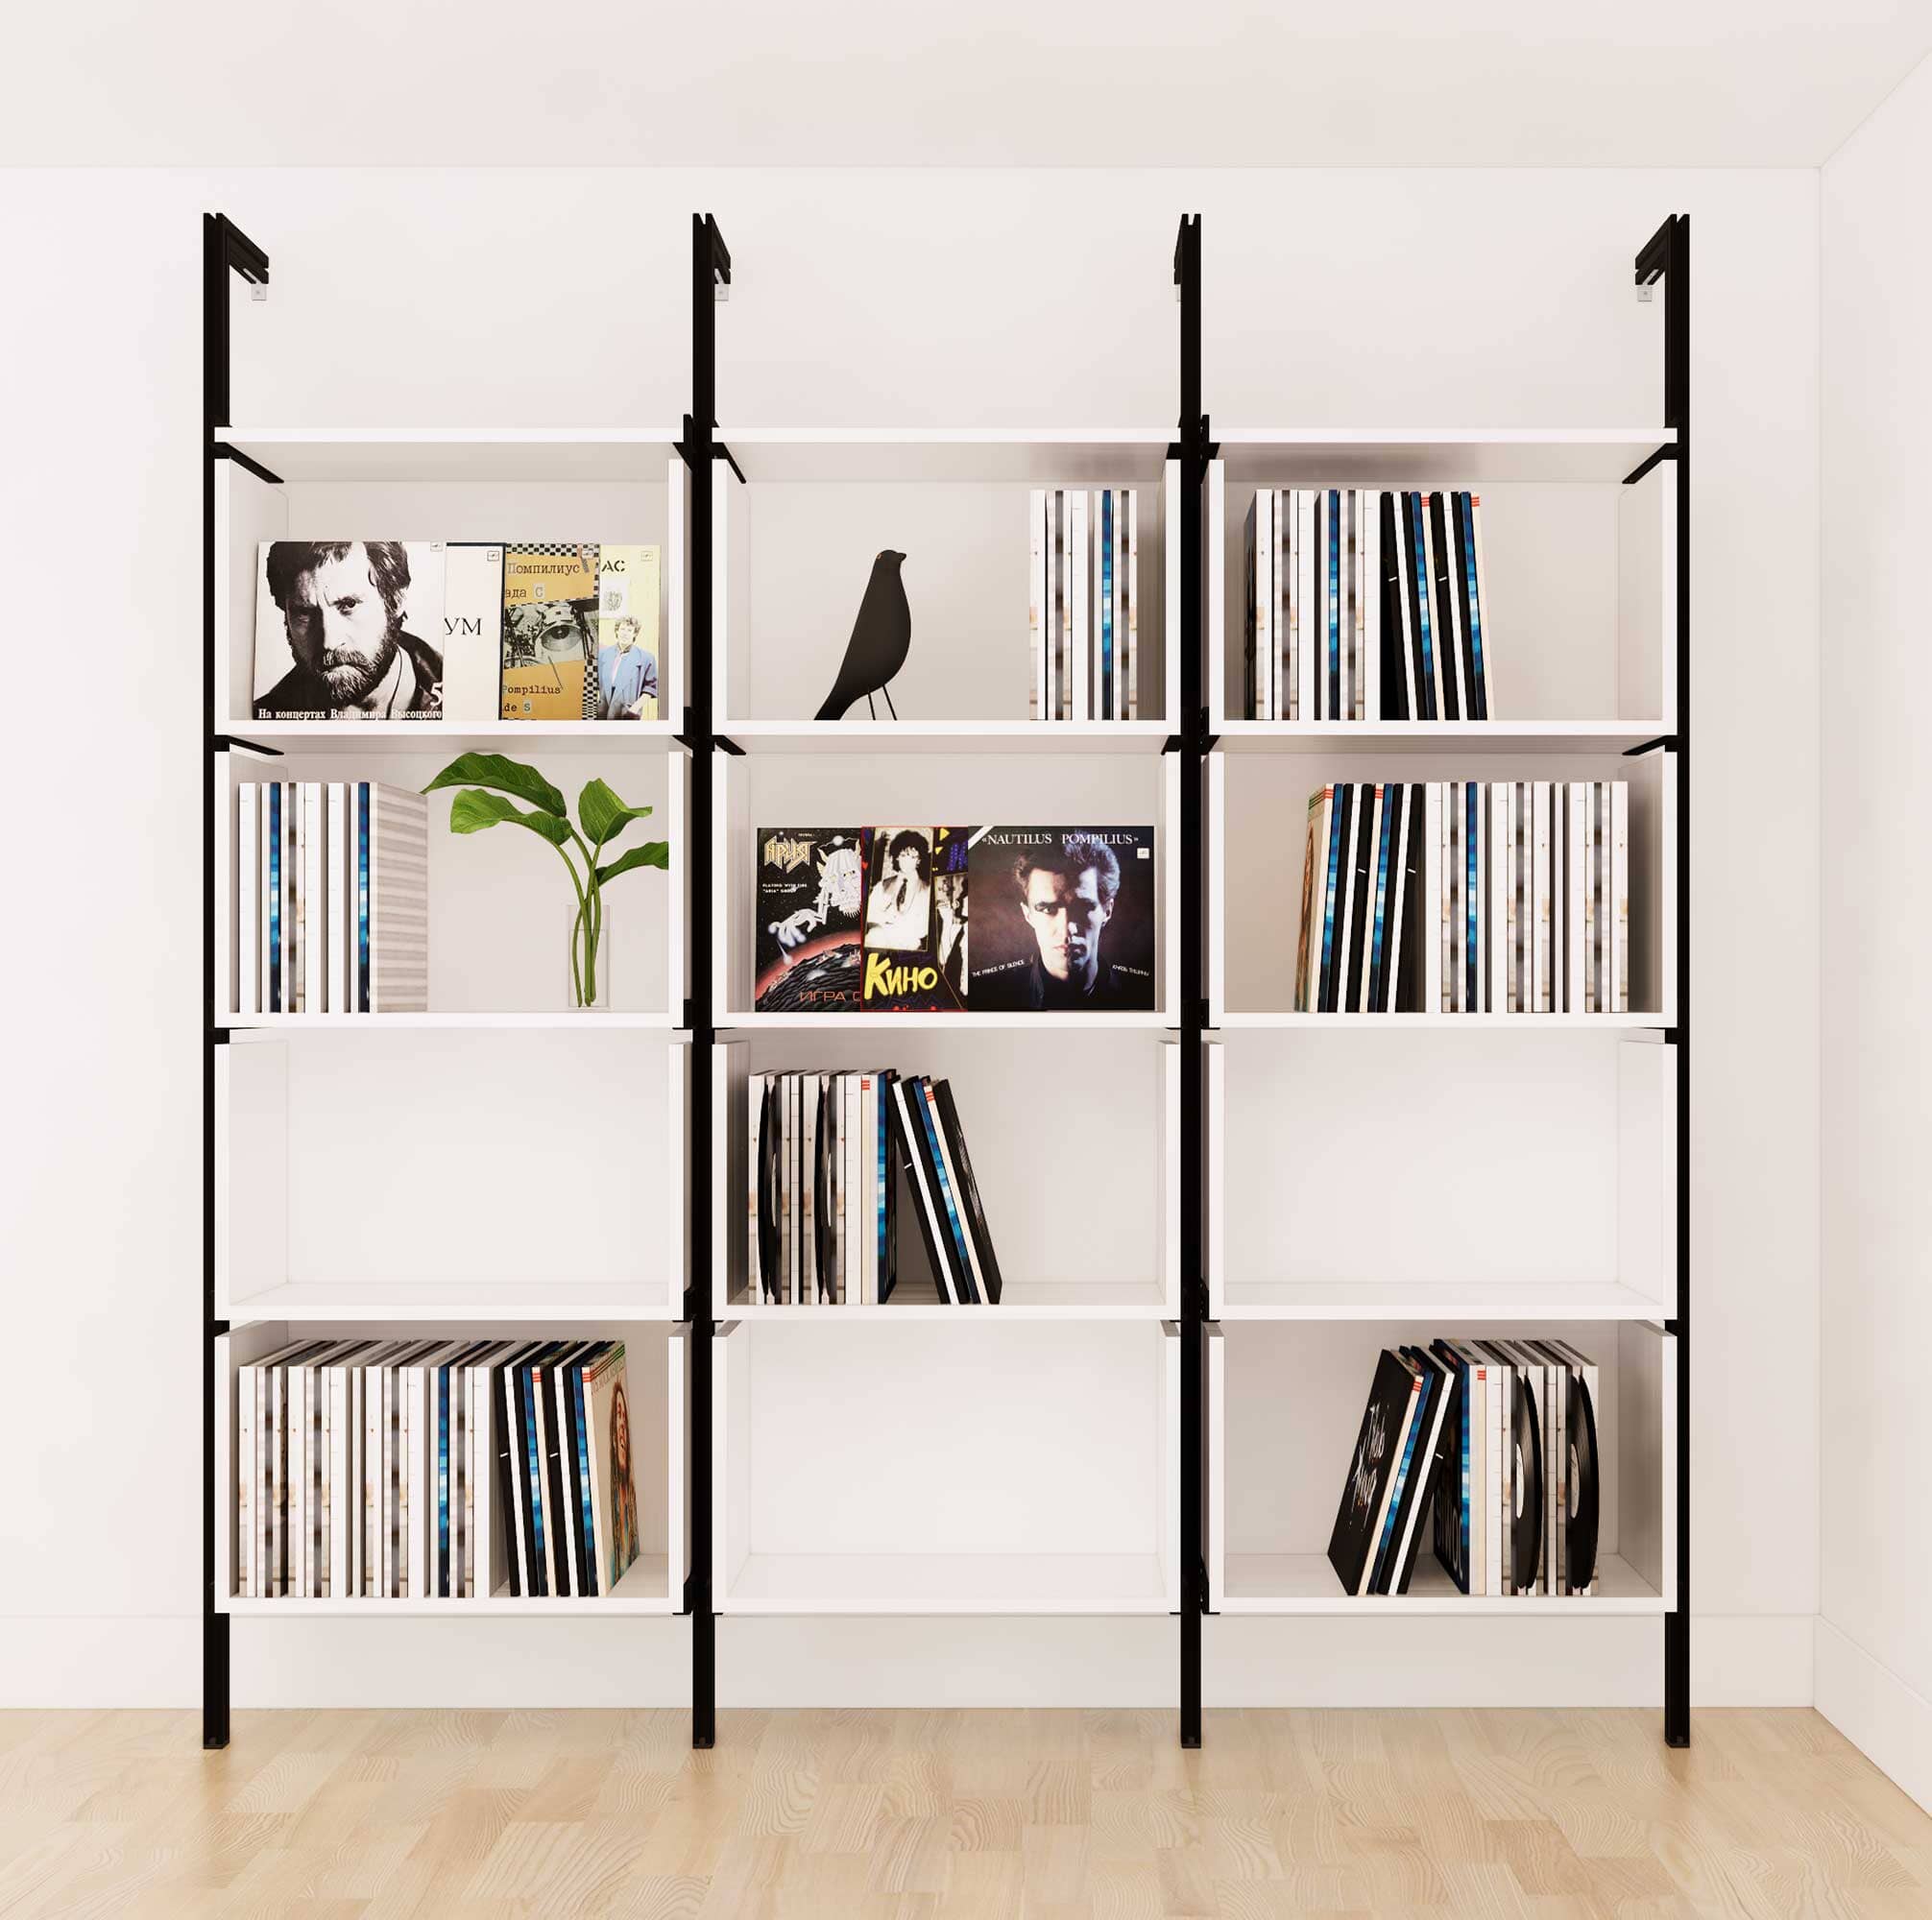 Vinyl Storage Series - Organize your LP's in Style